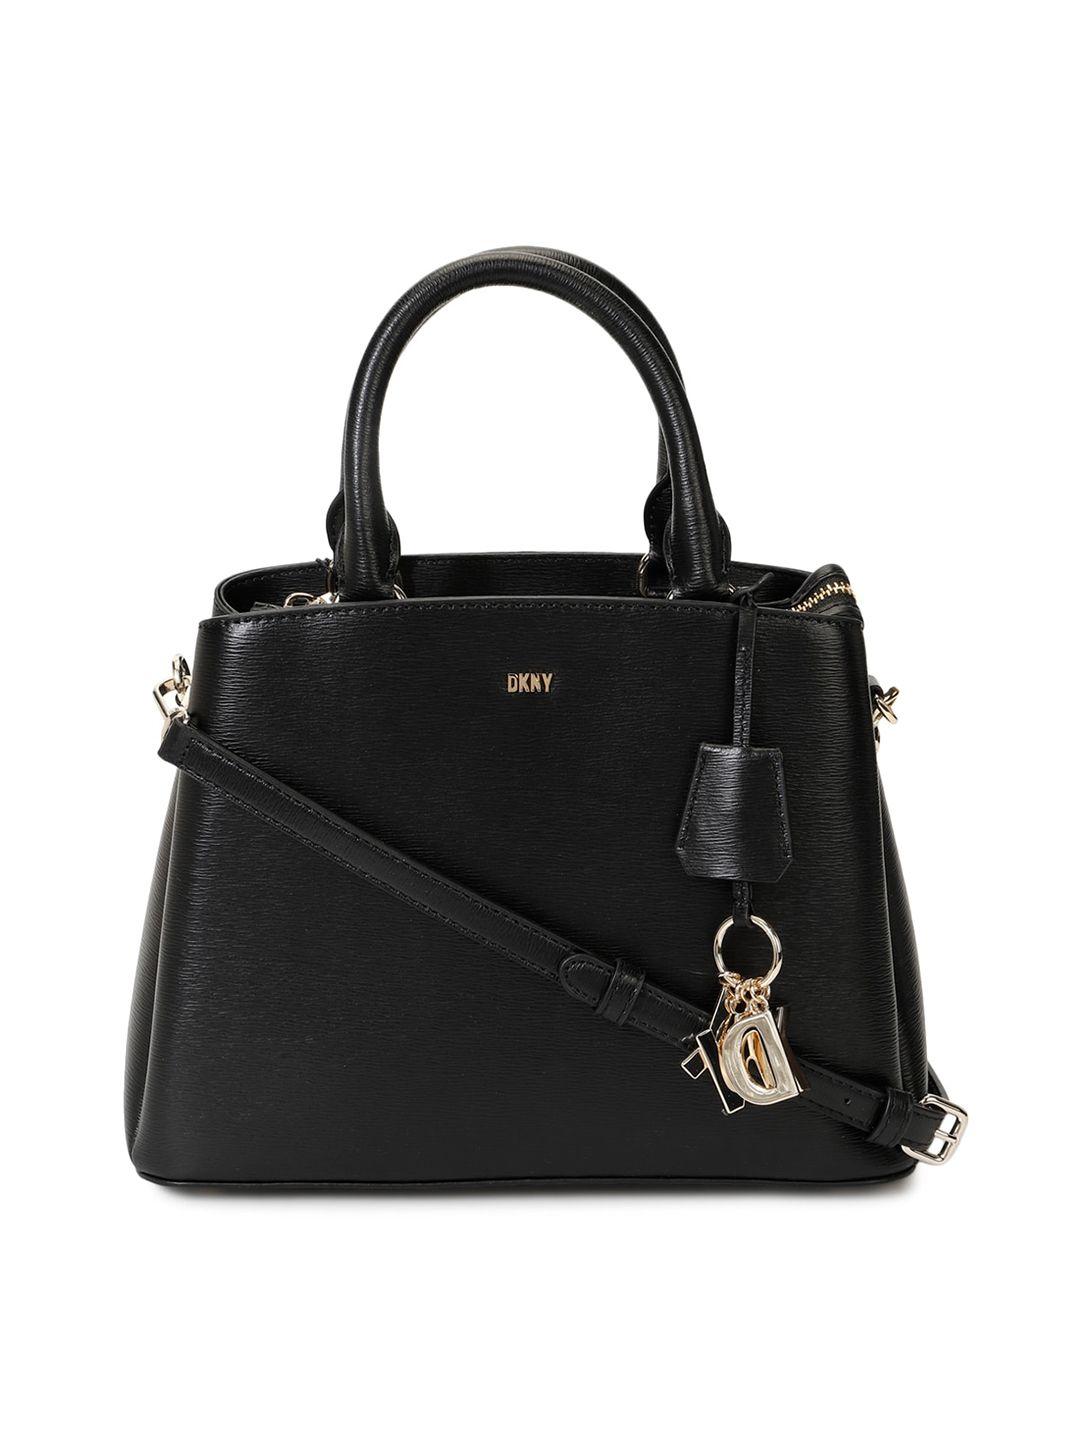 dkny leather satchel handbag